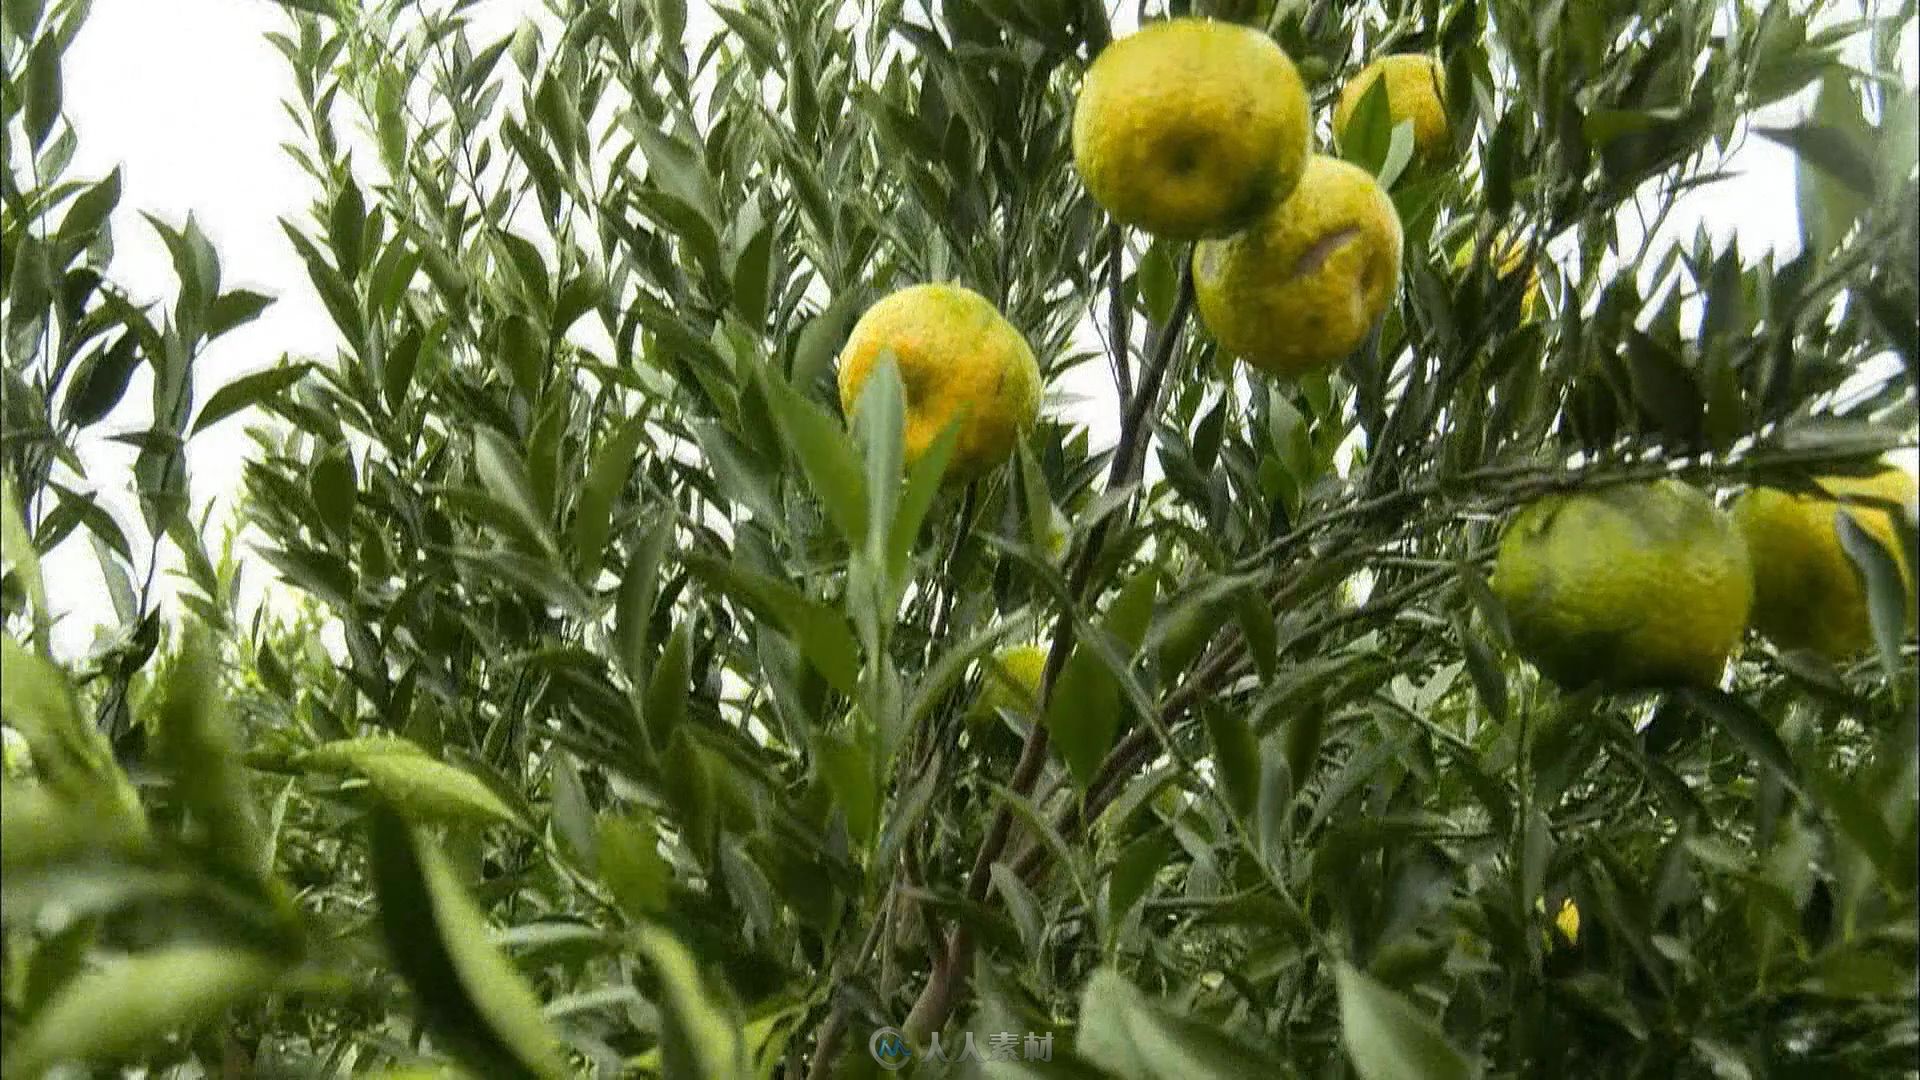 农民橘子地收获橘子视频素材